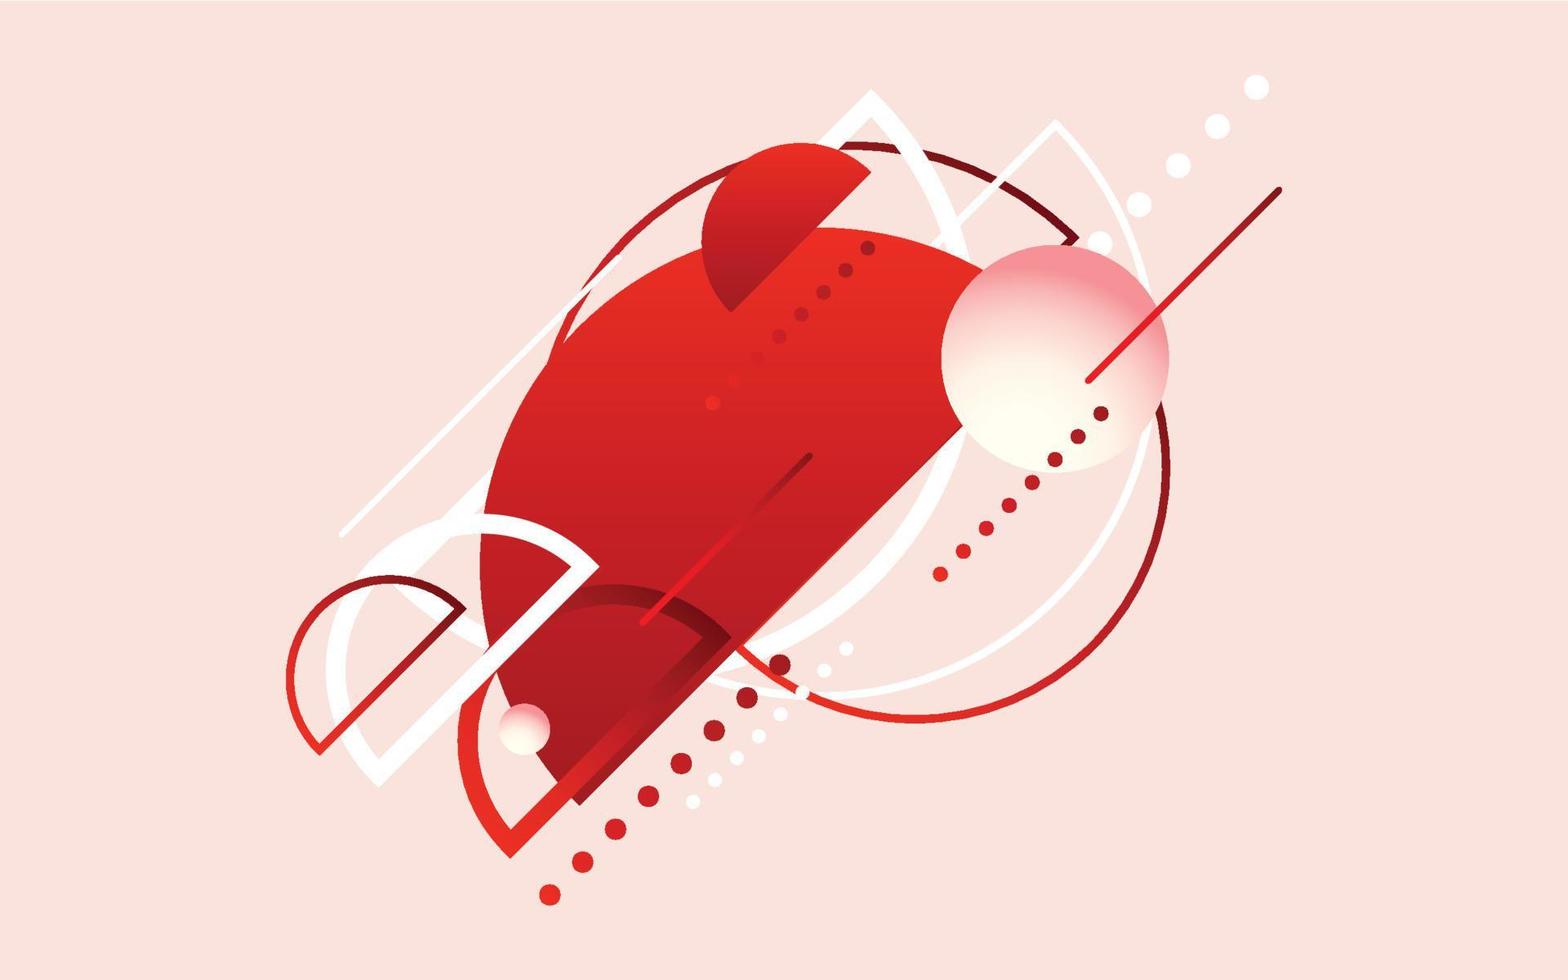 abstrakt röd modern teknologi bakgrund. vektor illustration